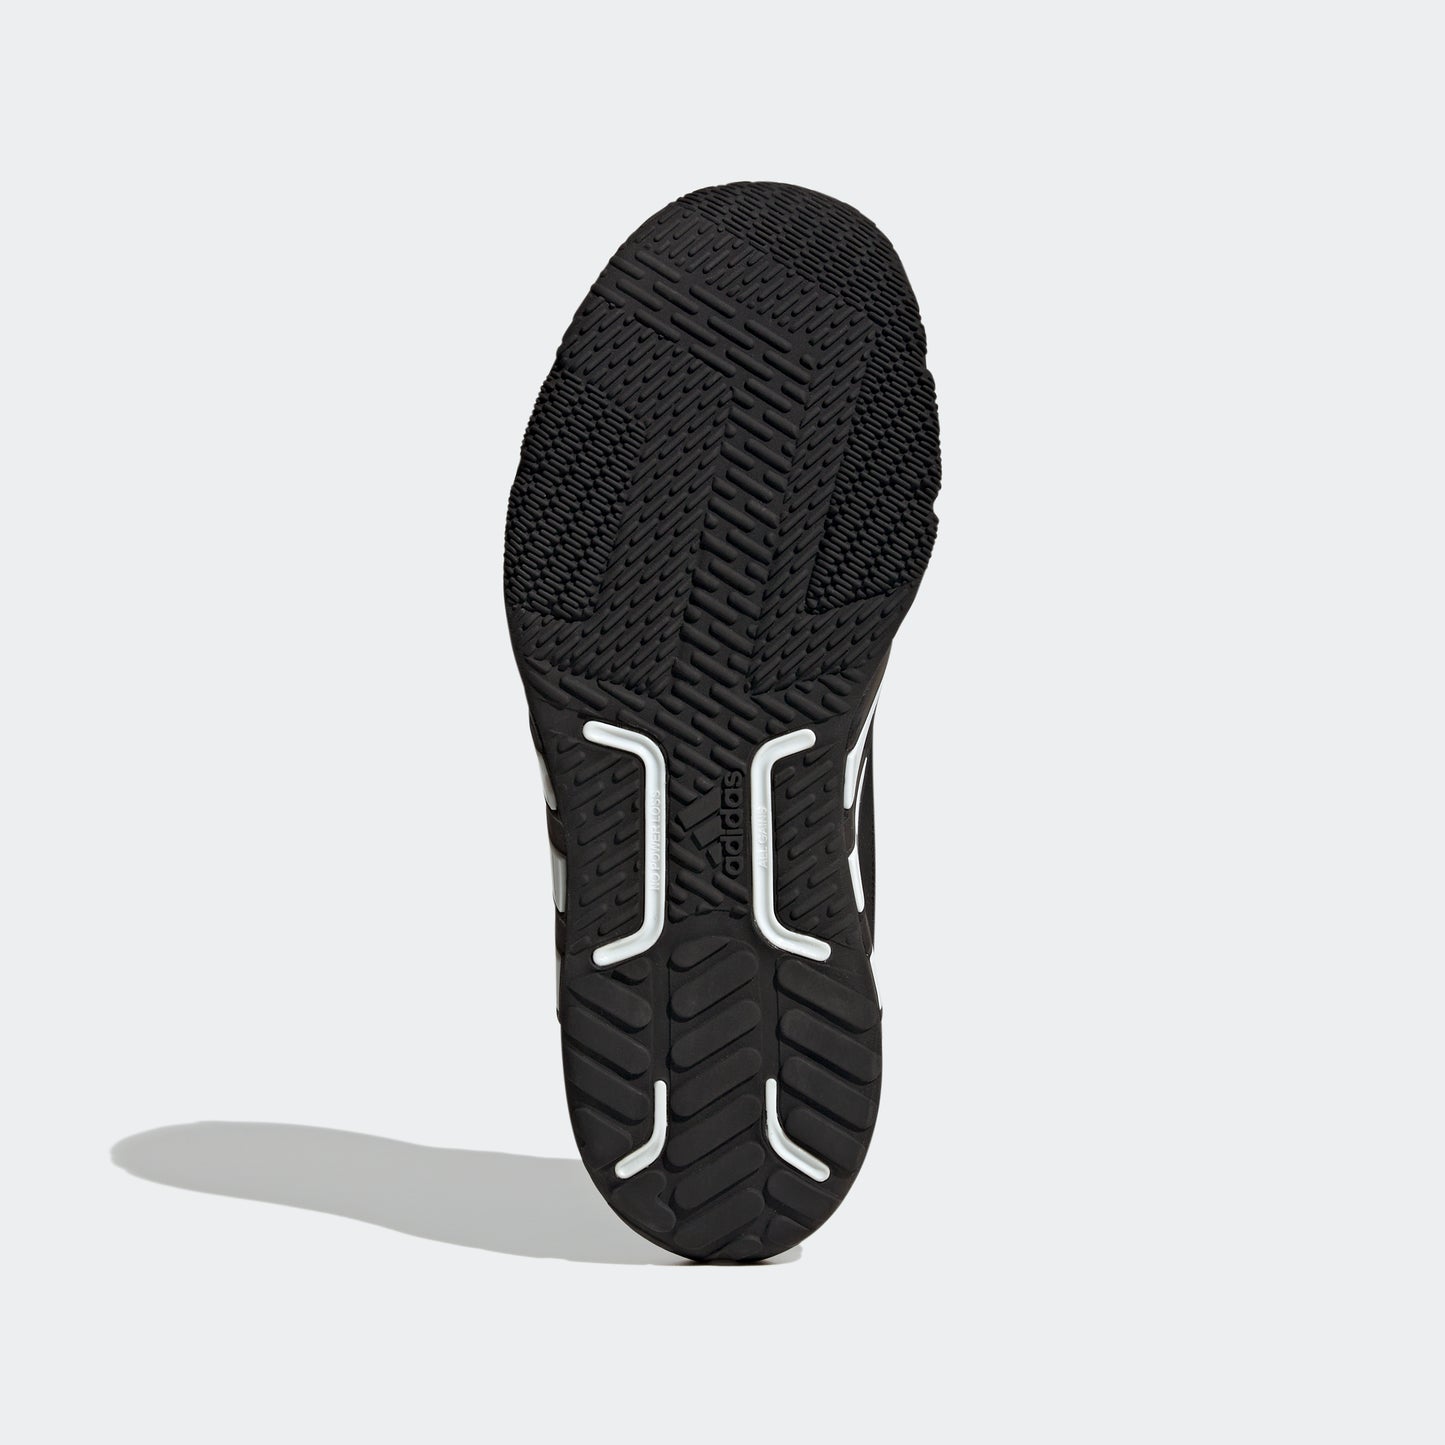 adidas Dropset Trainer Shoes | Black/White | Men's